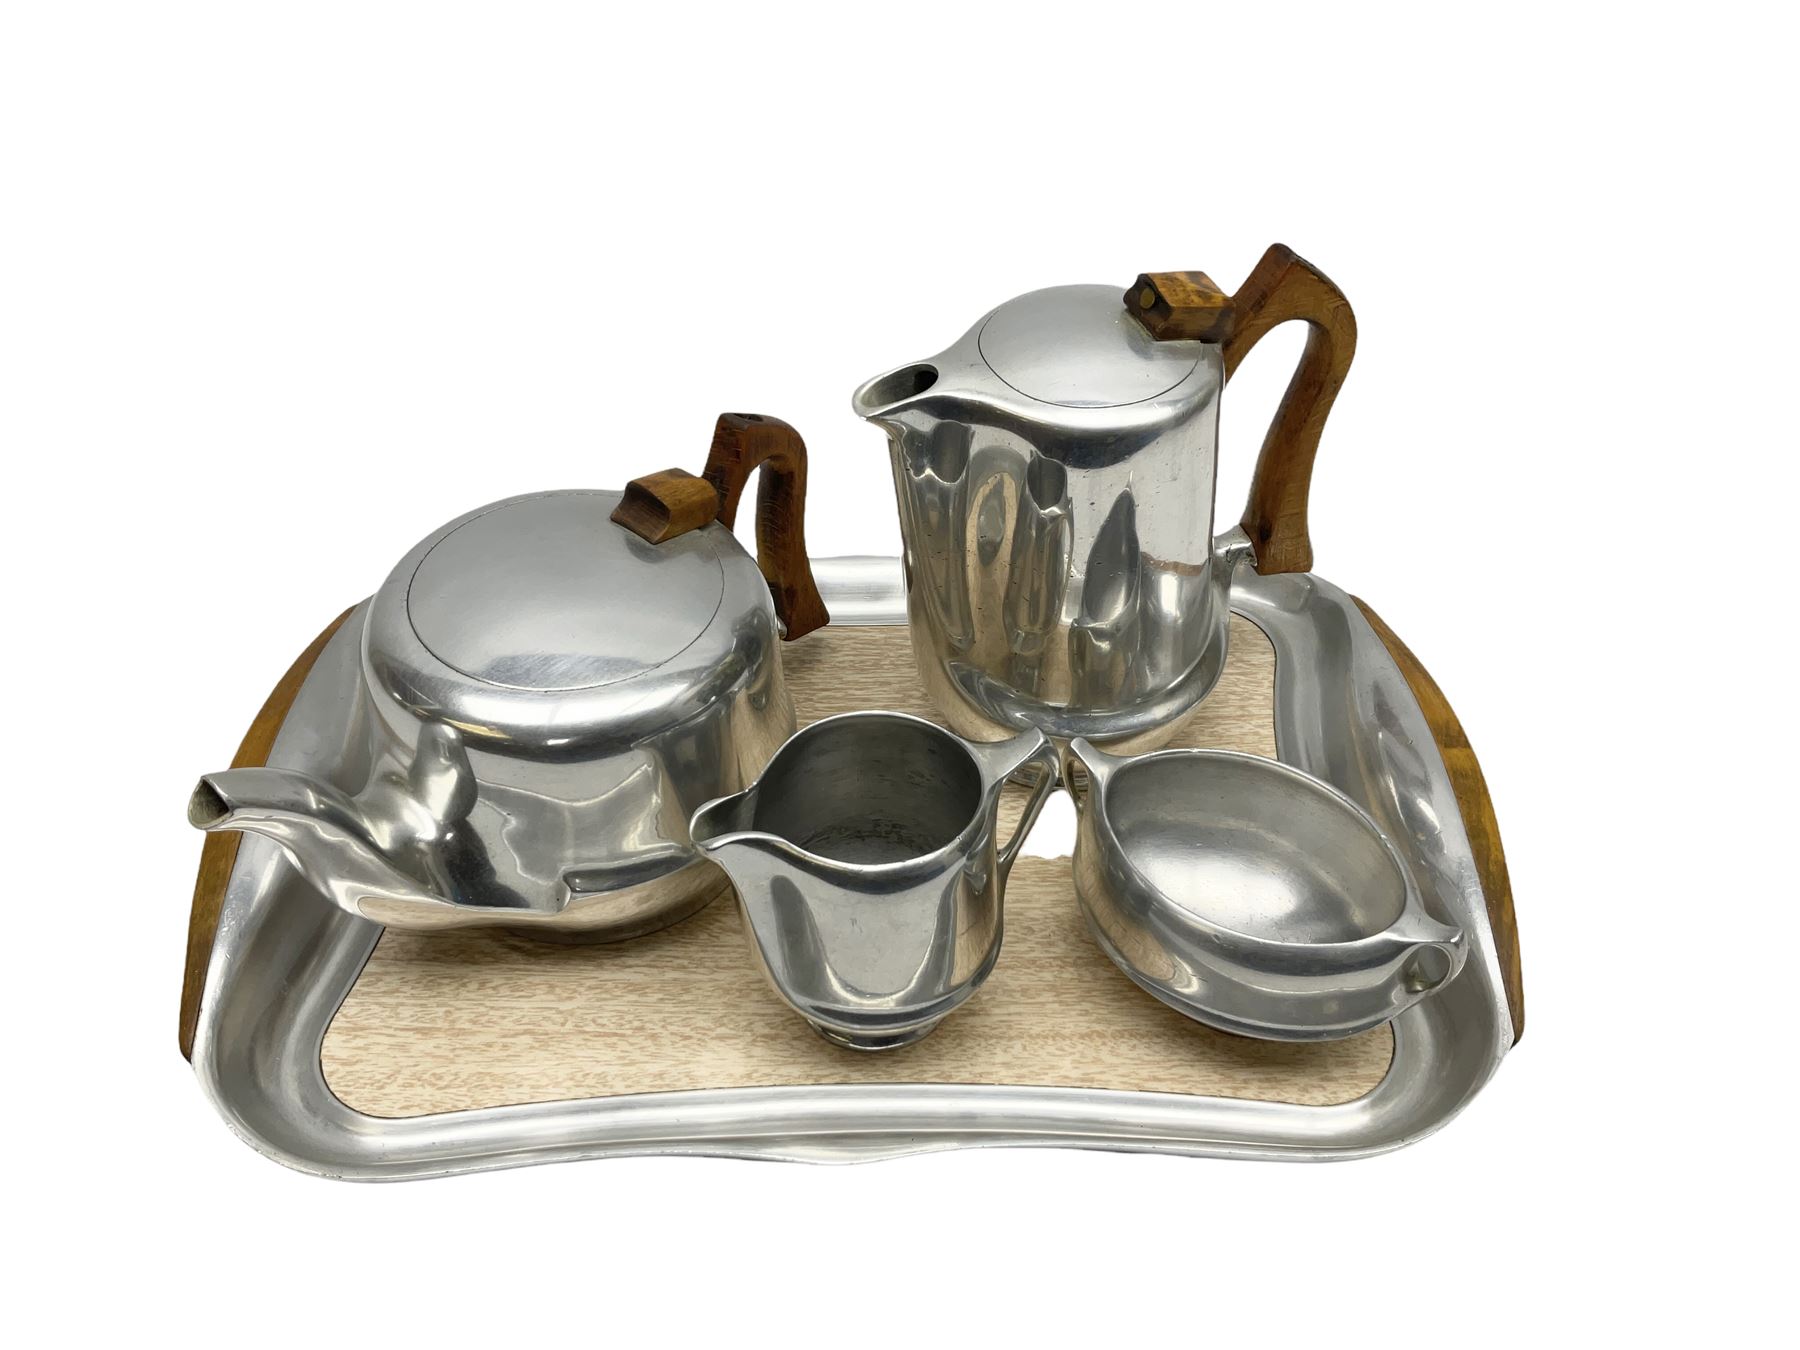 Piquot ware Newmaid tea set